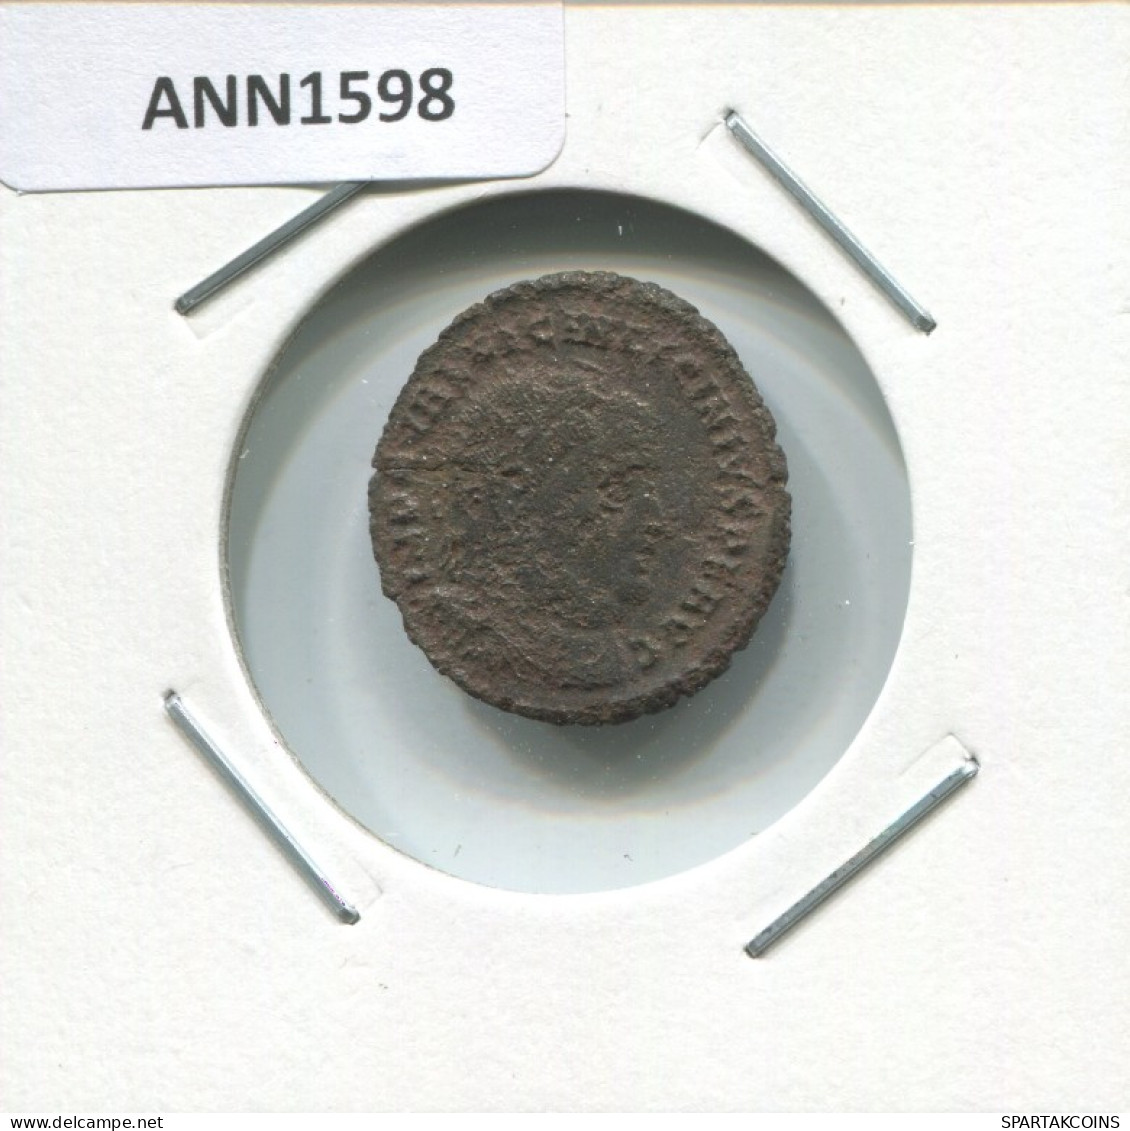 LICINIUS I NICOMEDIA SMN AD321-324 IOVI CONSERVATORI 2.4g/20mm #ANN1598.30.E.A - The Christian Empire (307 AD To 363 AD)